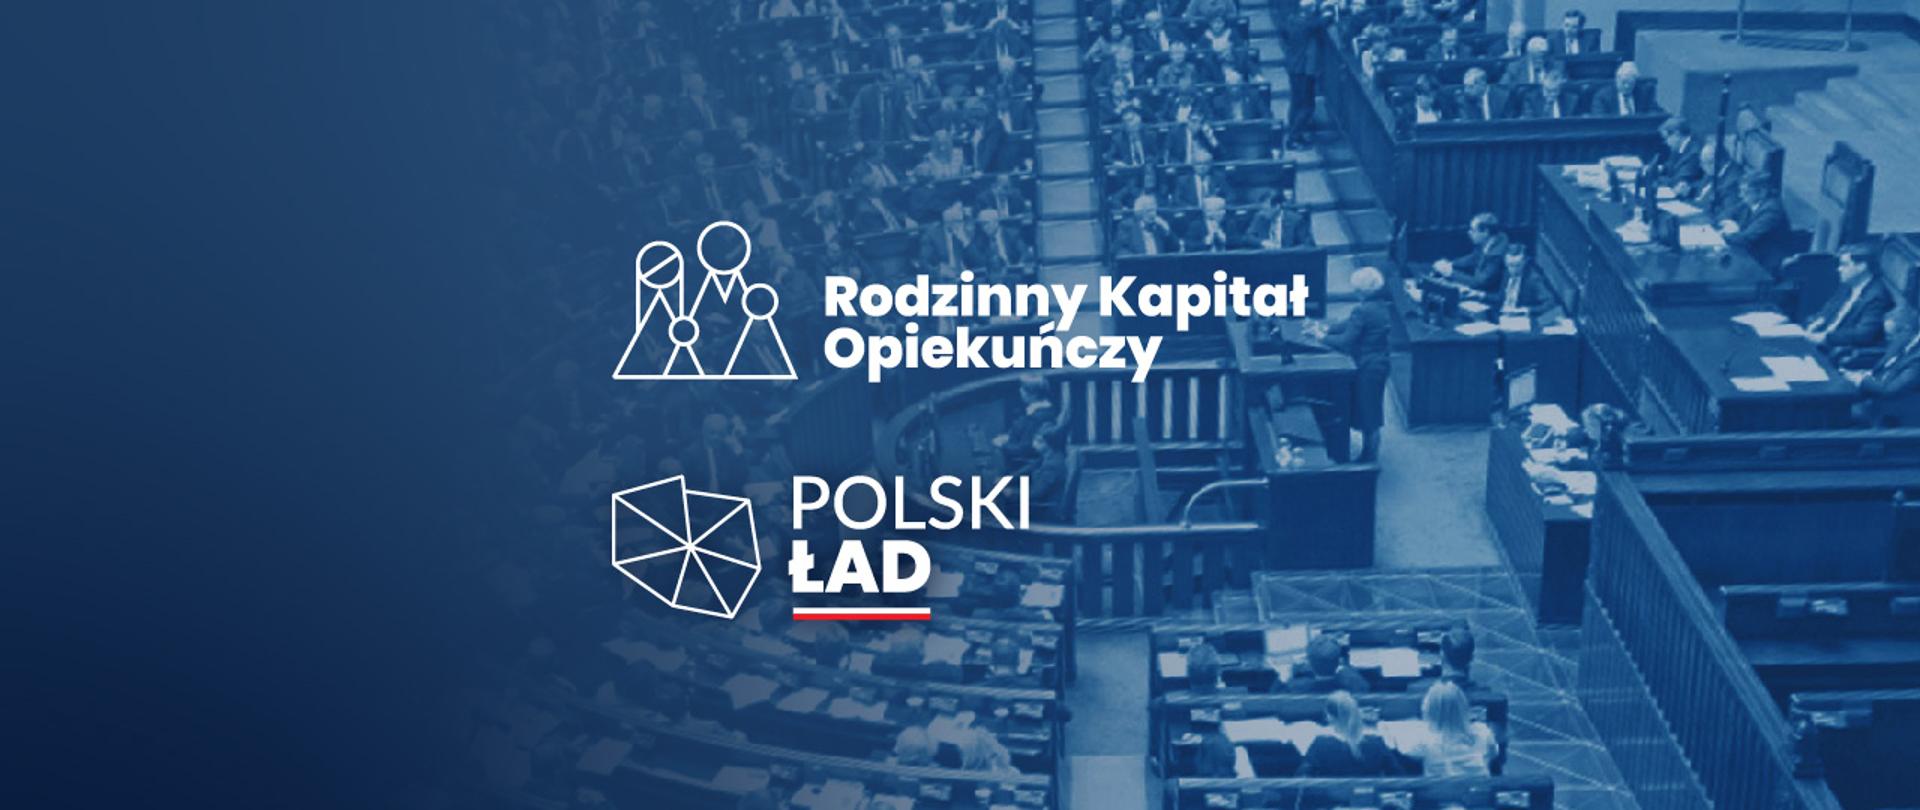 Grafika w tonacji niebieskiej z logo Rodzinnego Kapitału Opiekuńczego oraz logo Polskiego Ładu